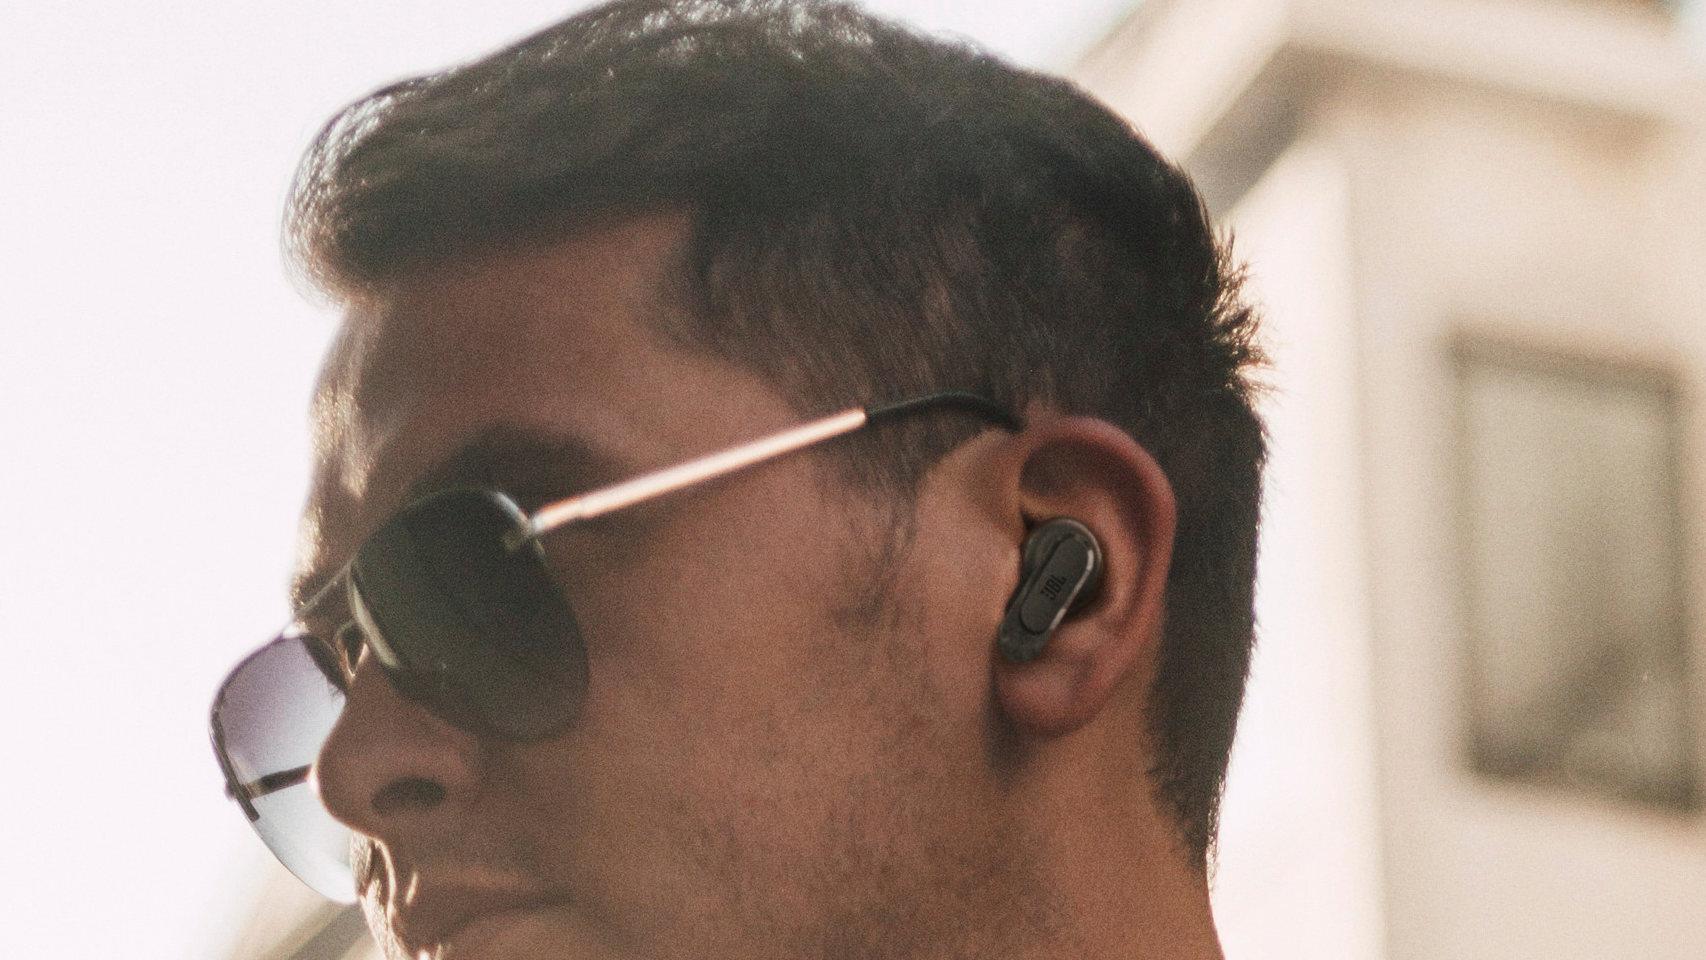 JBL lanza los primeros auriculares inalámbricos del mundo con pantalla en  el estuche